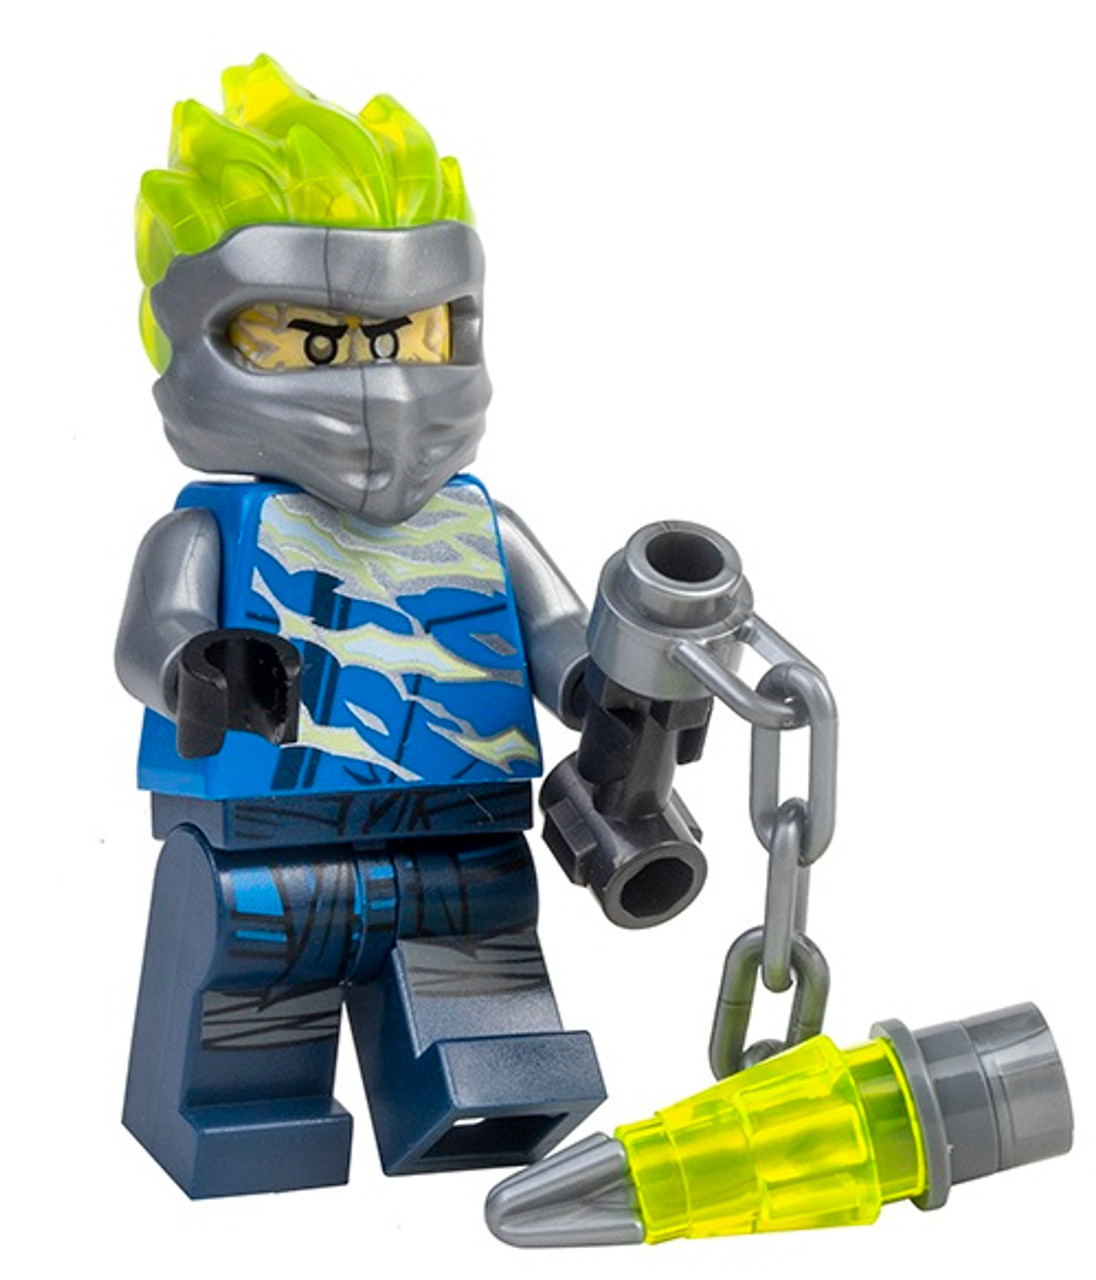 LEGO® Ninjago™ Techno Jay - With Techno Blade - Rebooted